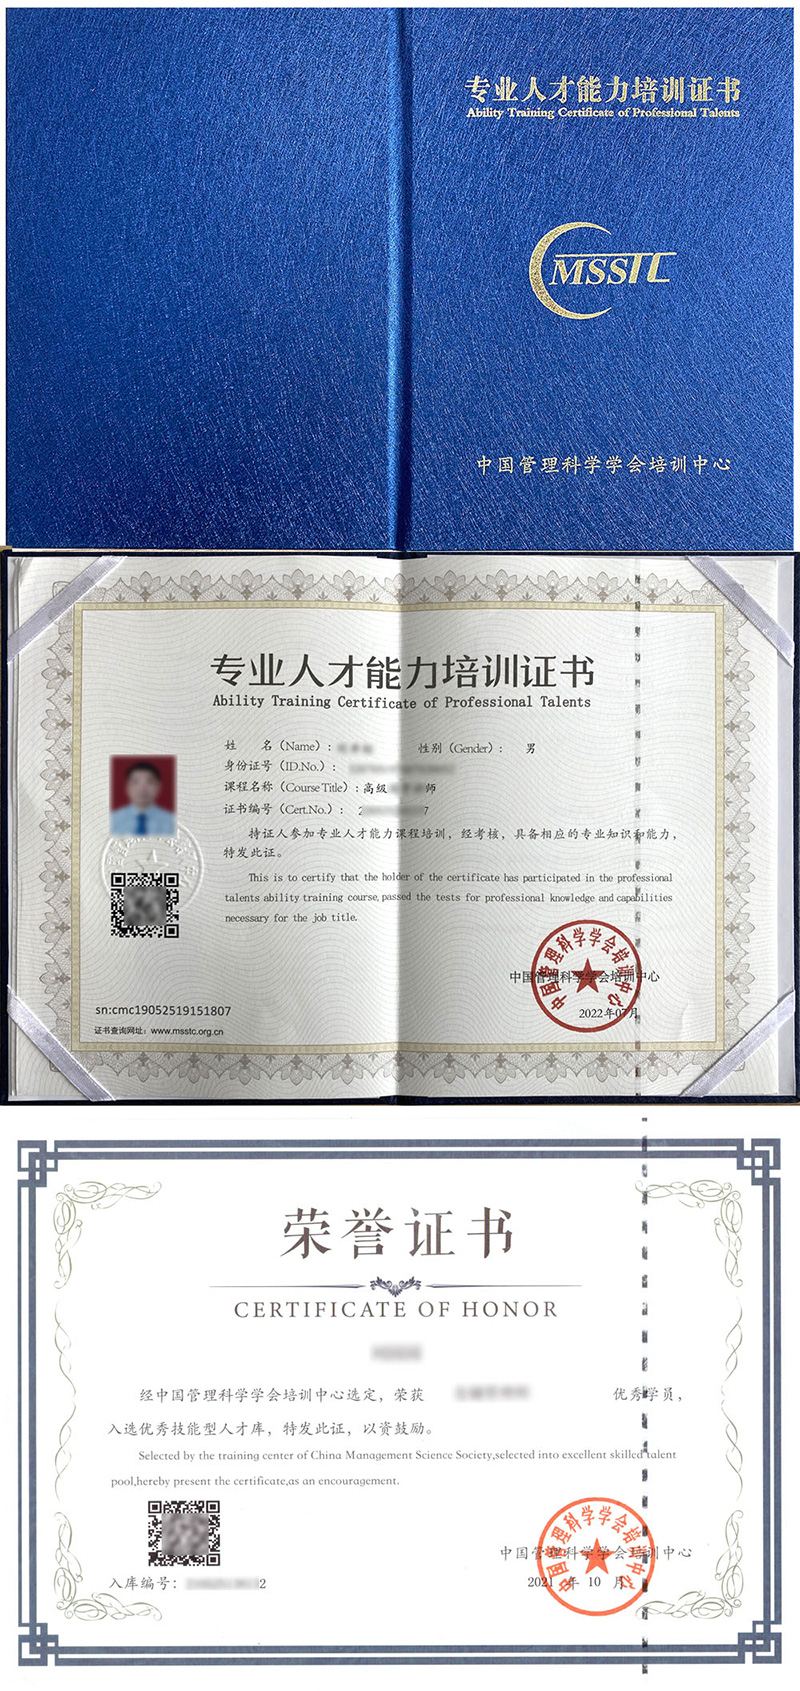 中国管理科学学会培训中心 专业人才能力培训证书 宠物美容师证证书样本